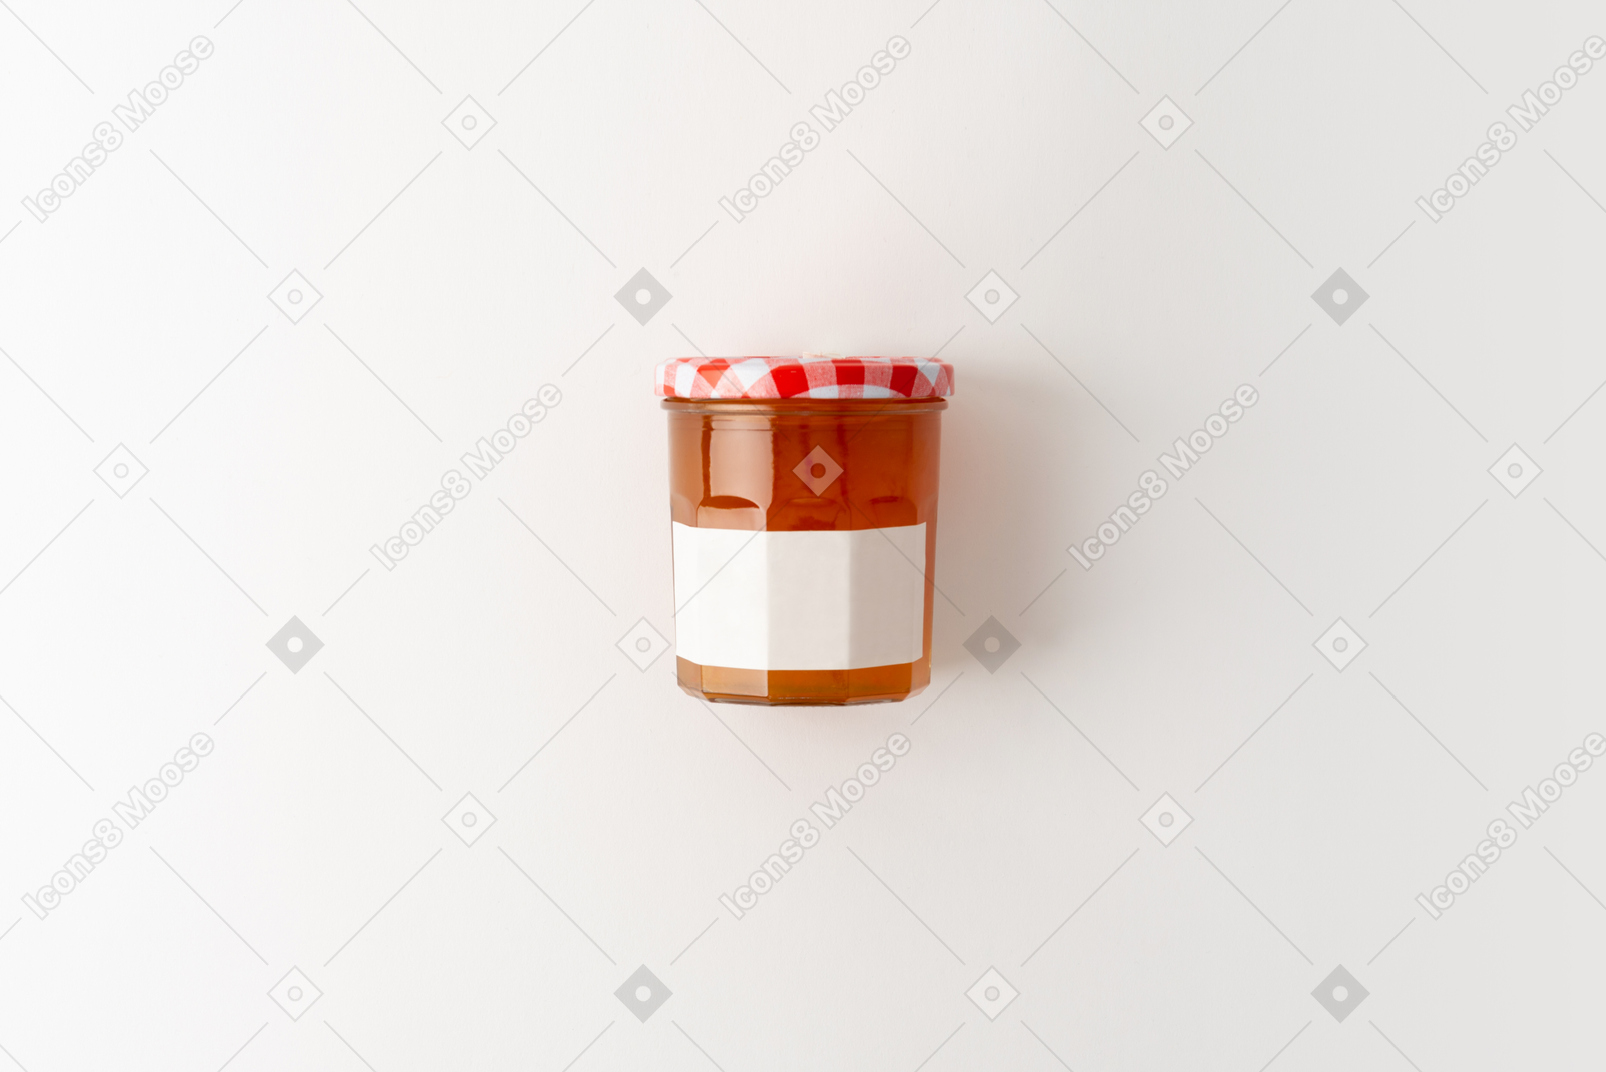 Un tarro de miel o mermelada